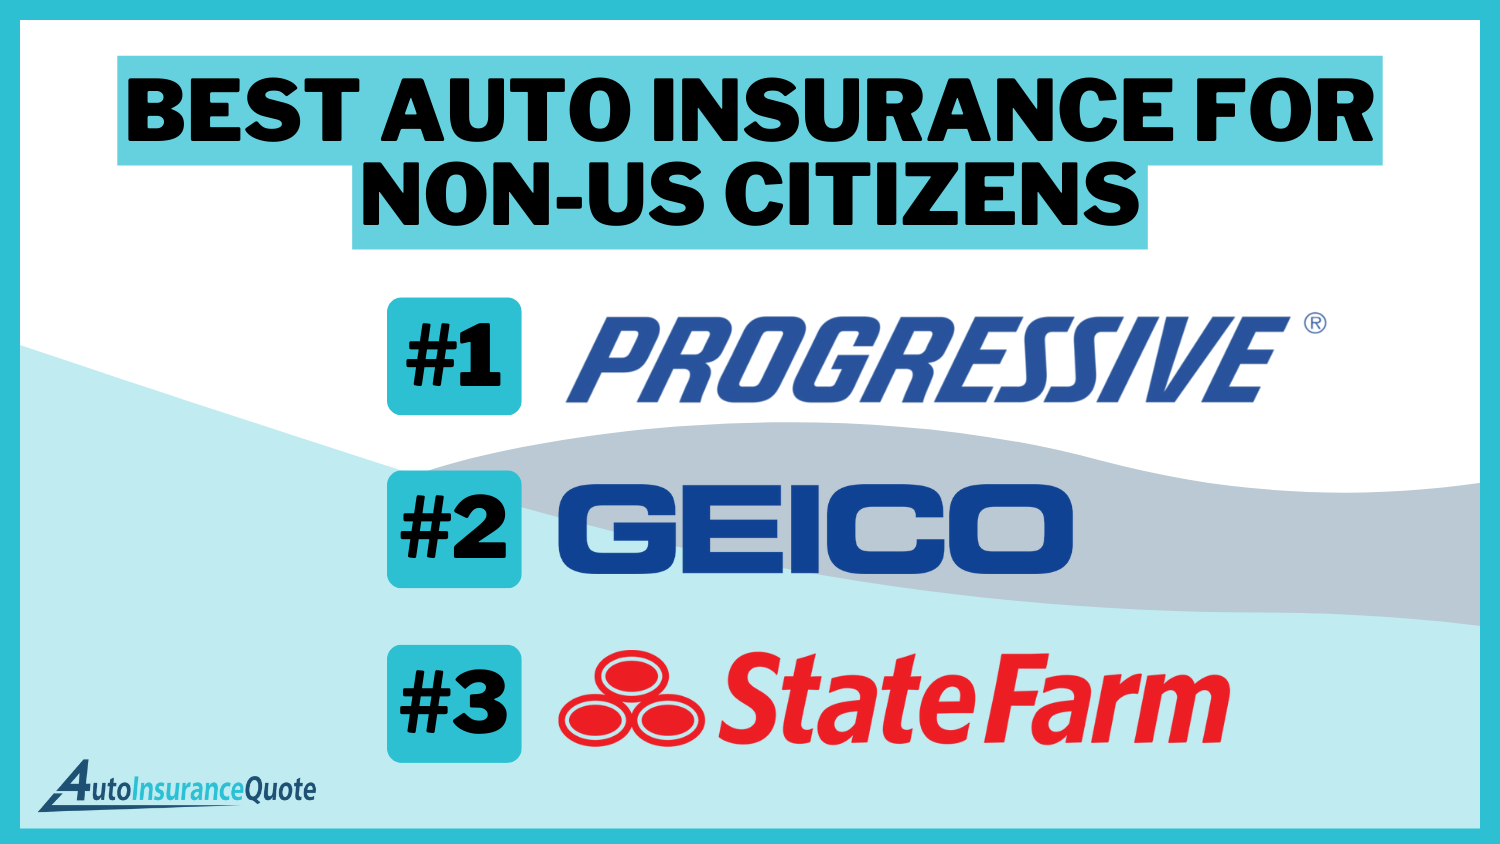 Best Auto Insurance for Non-US Citizens: Progressive, Geico, and State Farm